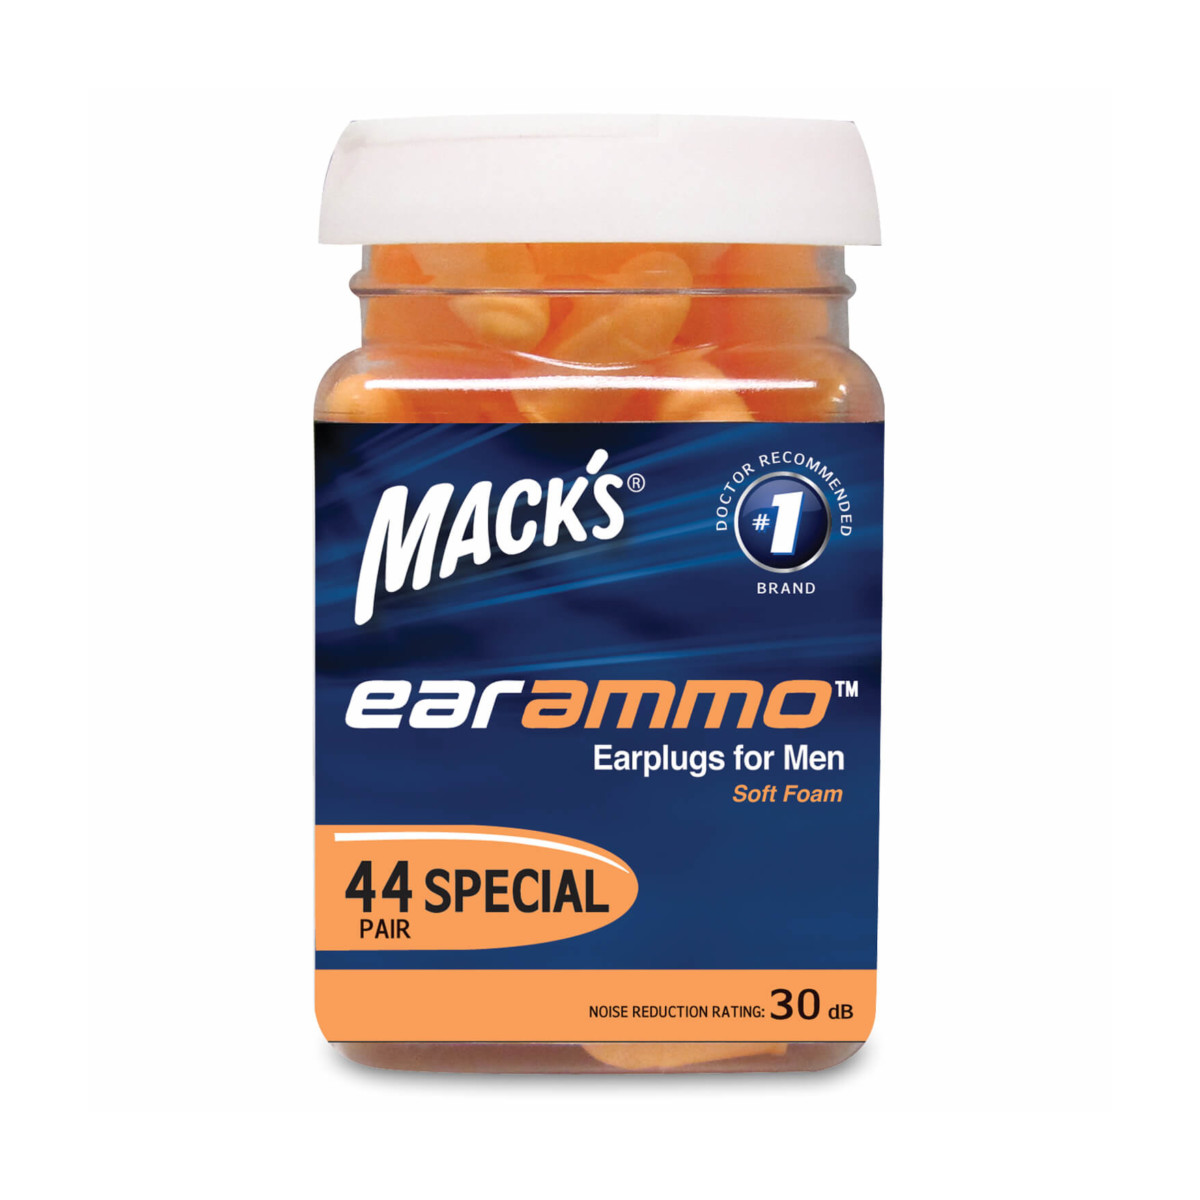 Ear Ammo Soft Foam Earplugs for Men, 44 Pairs per Jar